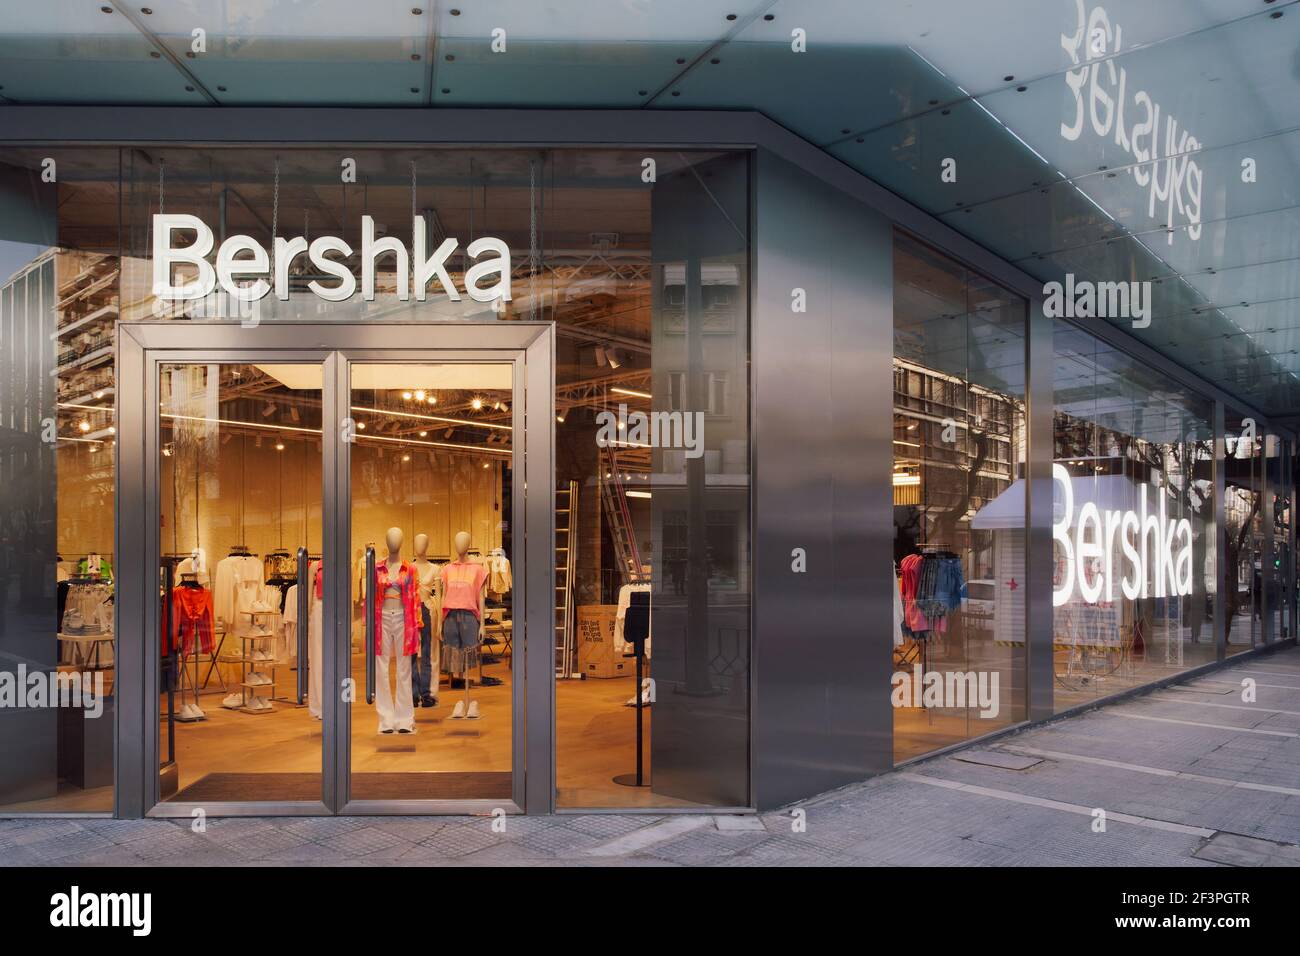 Bershka Einzelhändler Laden außen mit Logo.Spanish Kleidung & Accessoires  Marke von Inditex, Handel weltweit Laden mit Kleidung in Thessaloniki  Griechenland Stockfotografie - Alamy